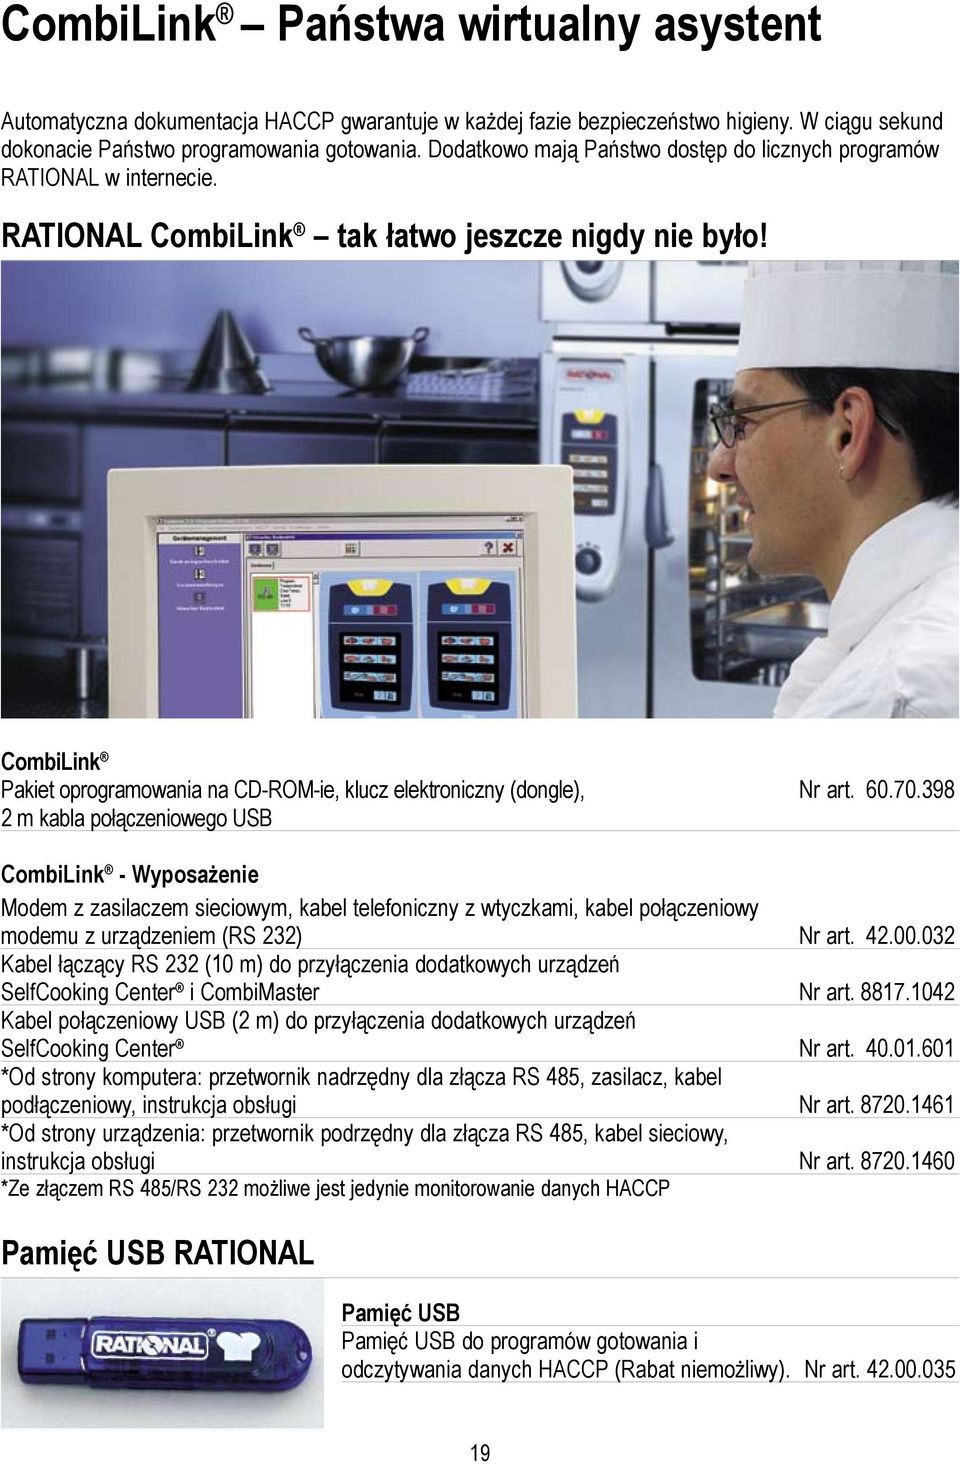 CombiLink Pakiet oprogramowania na CD-ROM-ie, klucz elektroniczny (dongle), Nr art. 60.70.